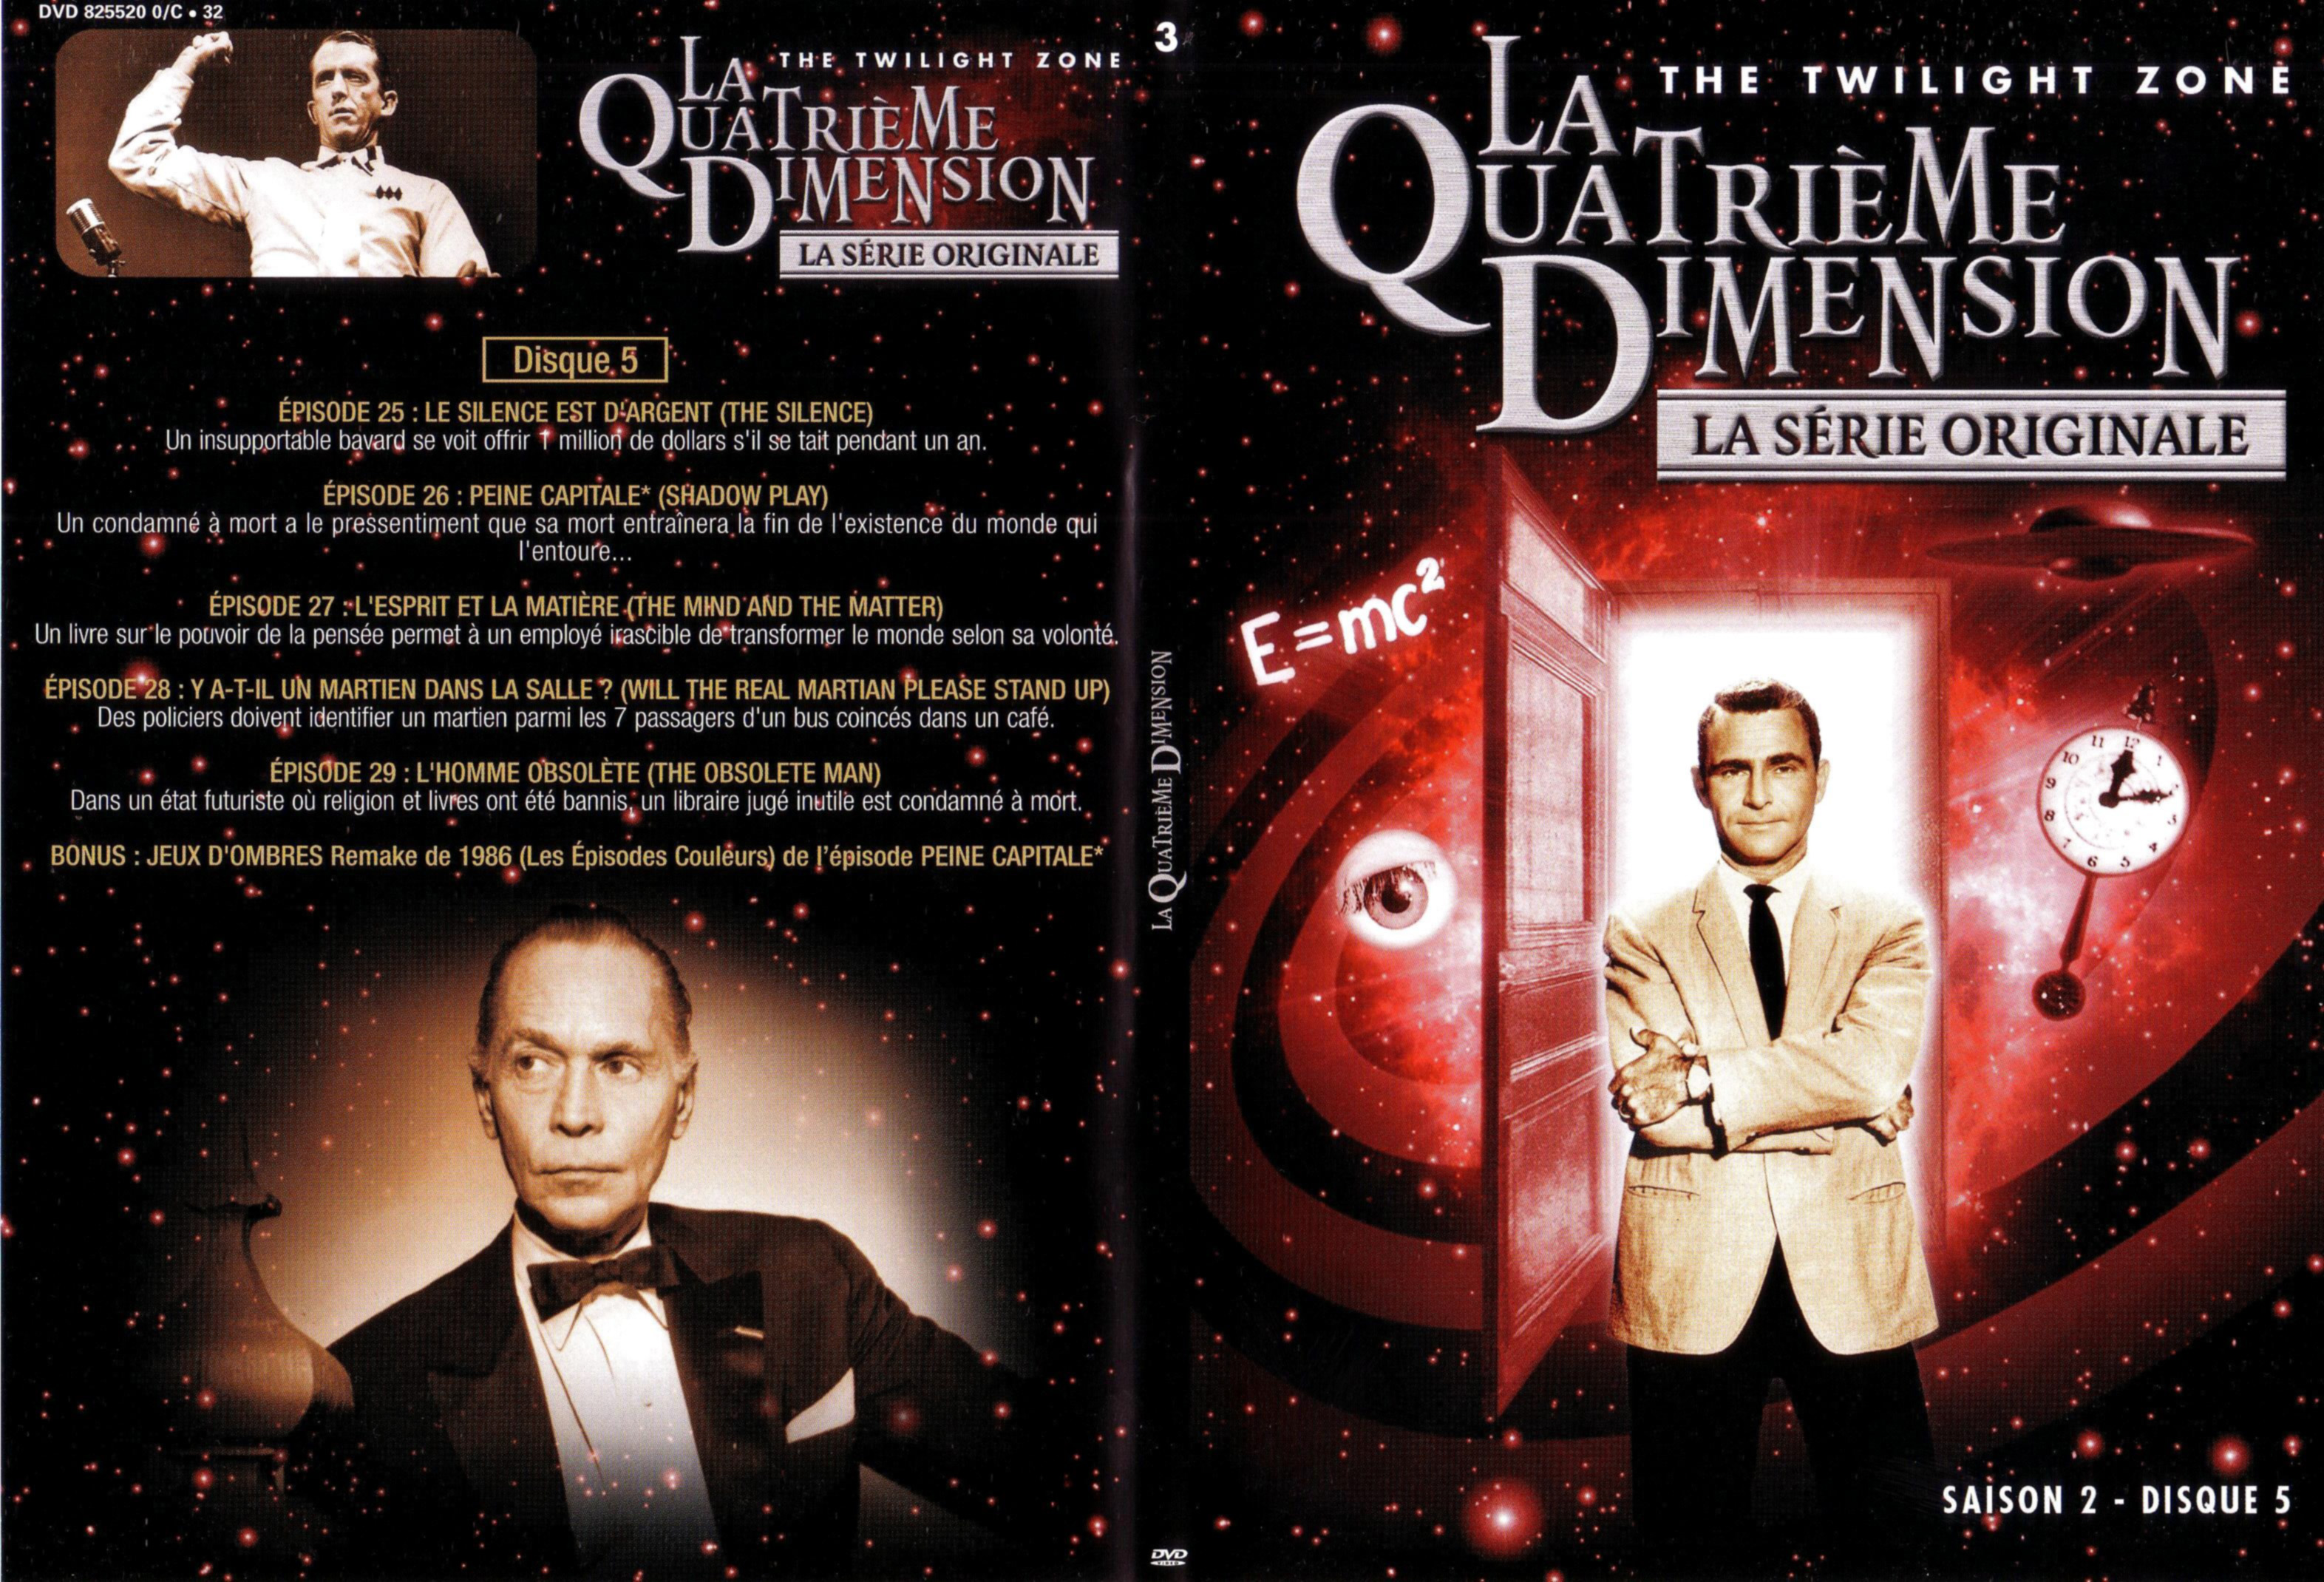 Jaquette DVD La quatrieme dimension saison 2 vol 3